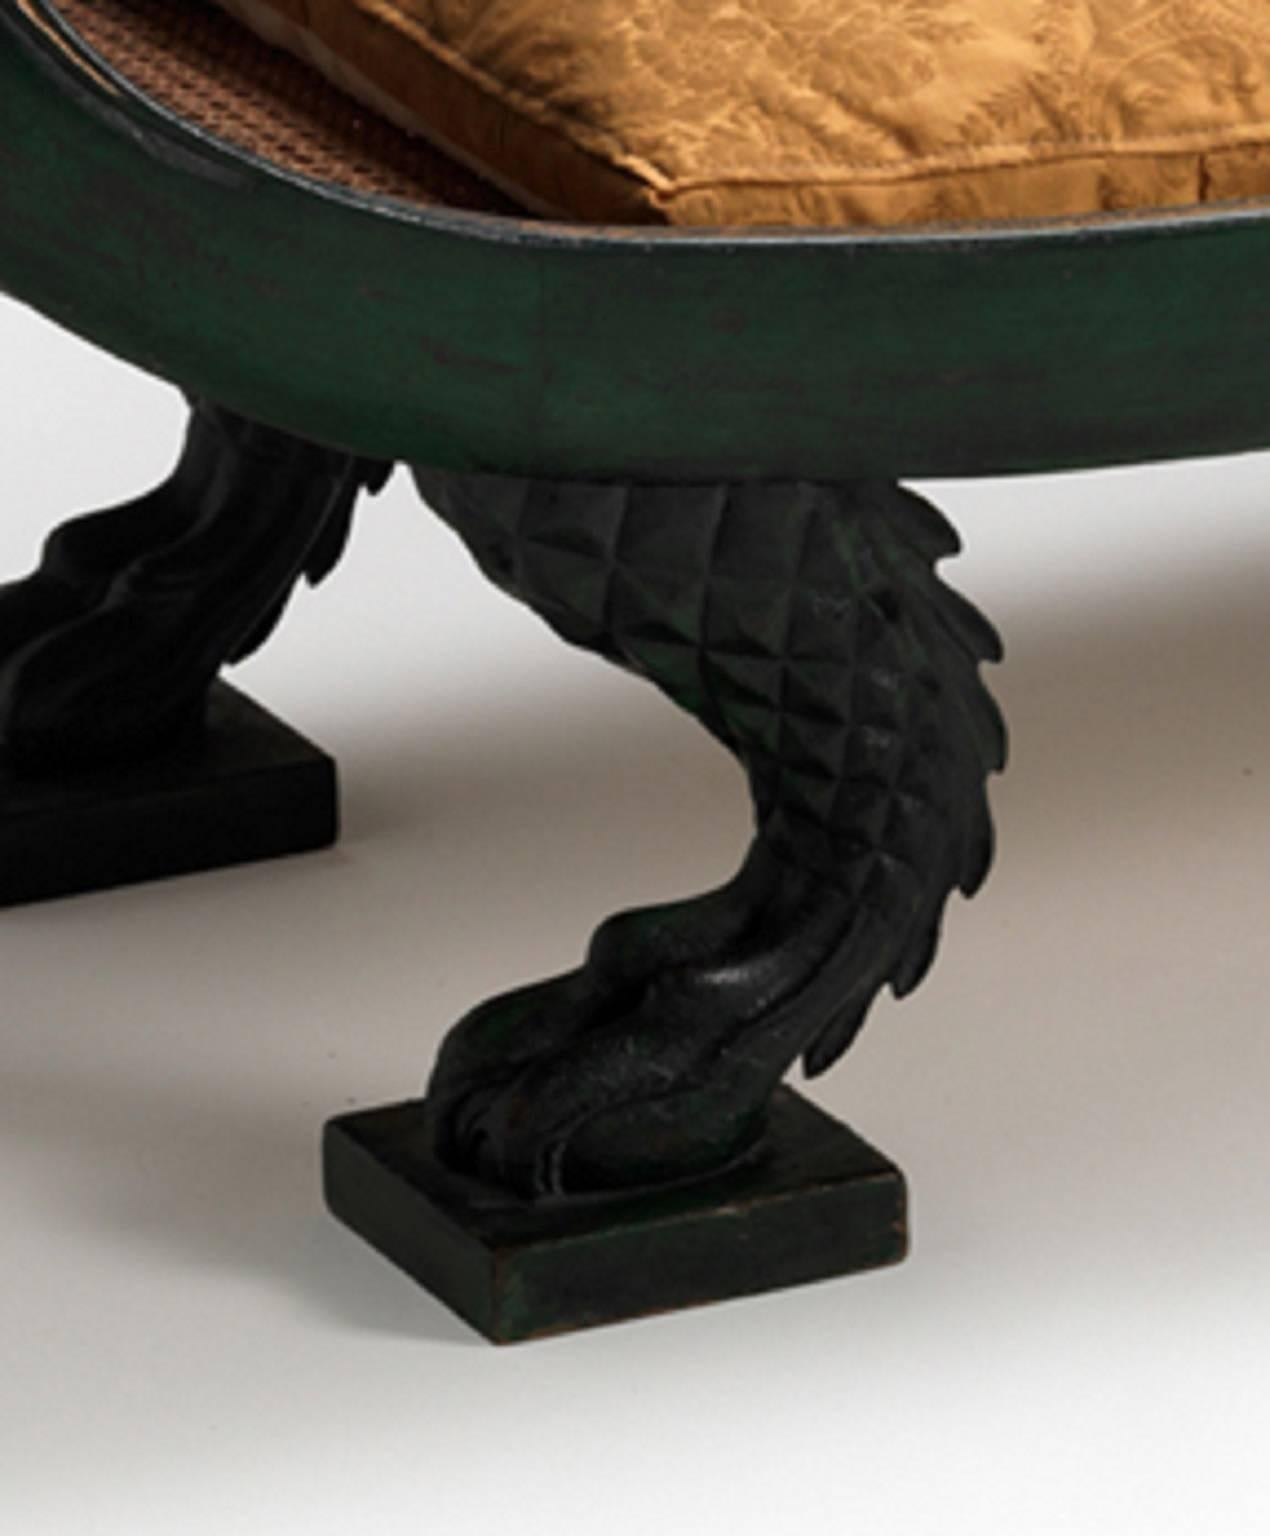 Ein feines Regency-Design-Tagesbett / Chaiselongue, inspiriert von den Arbeiten am Brighton Pavilion. Die Enden in Form von Muschelschalen. Die Beine haben die Form eines stilisierten Krokodils. Geschnitzt in Mahagoni und fachmännisch